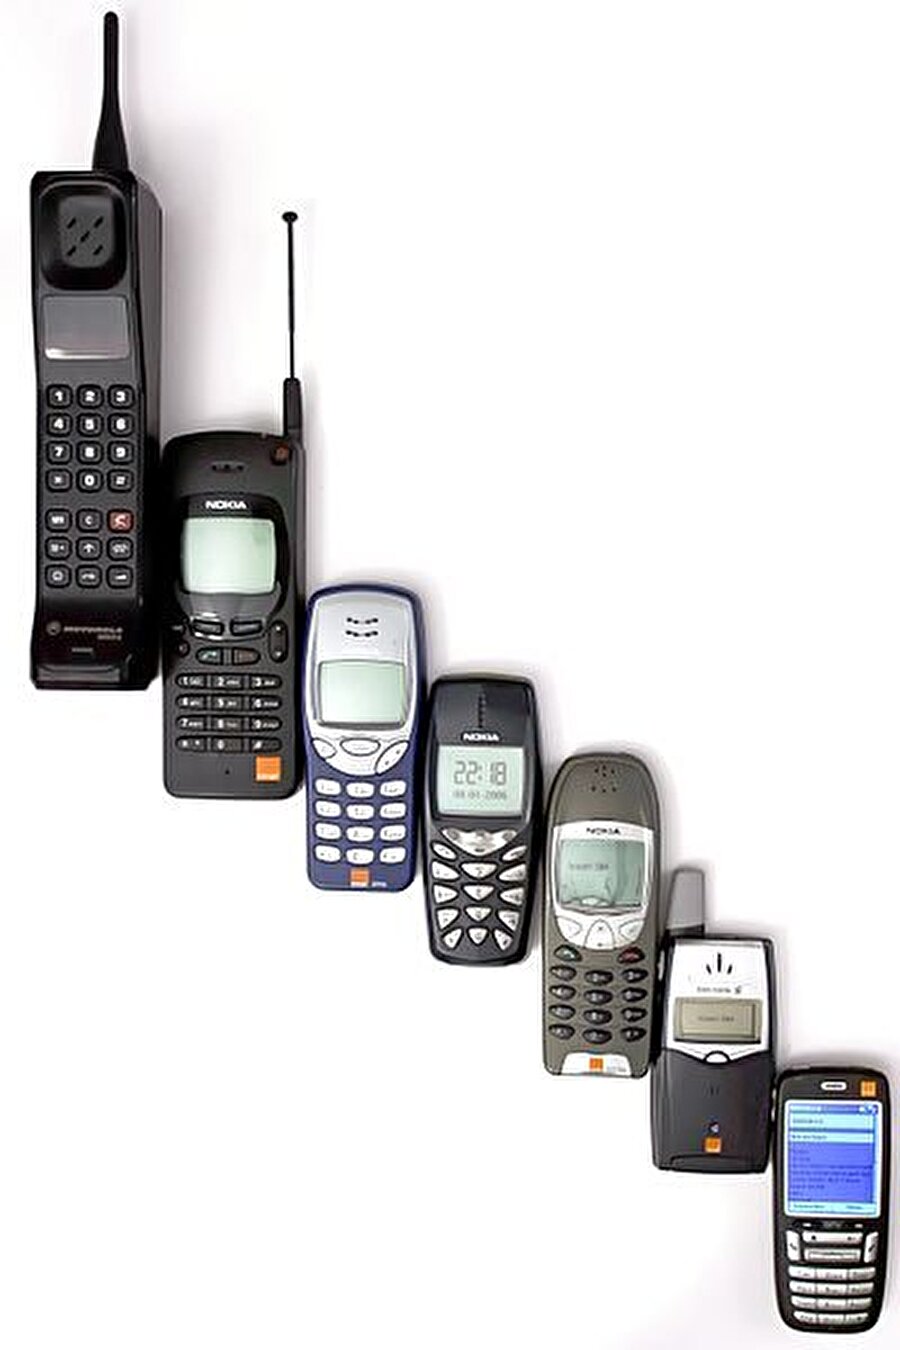 Cep telefonu ne zaman bulundu?

                                    
                                    İlk cep telefonunun 1980'lerin sonlarında icat edildiği düşünülür. Ancak Motorola 1973 yılında ilk cep telefonunun tanıtımını yapmıştır.
                                
                                